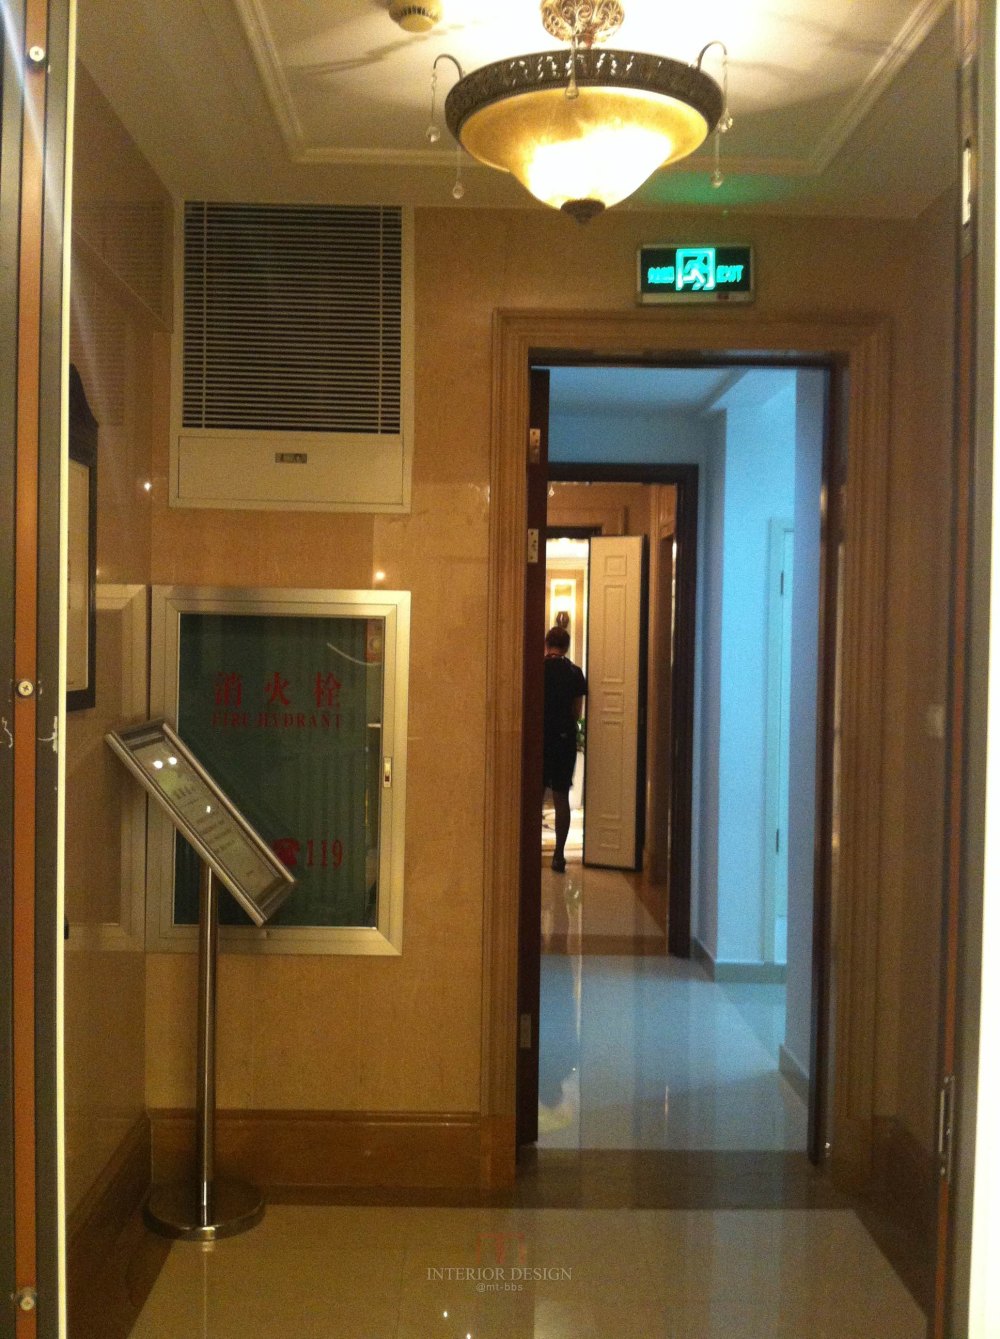 [2012] 韦格斯杨(GGC)--上海中海紫御豪庭项目9#楼C+250户型_IMG_0656.jpg